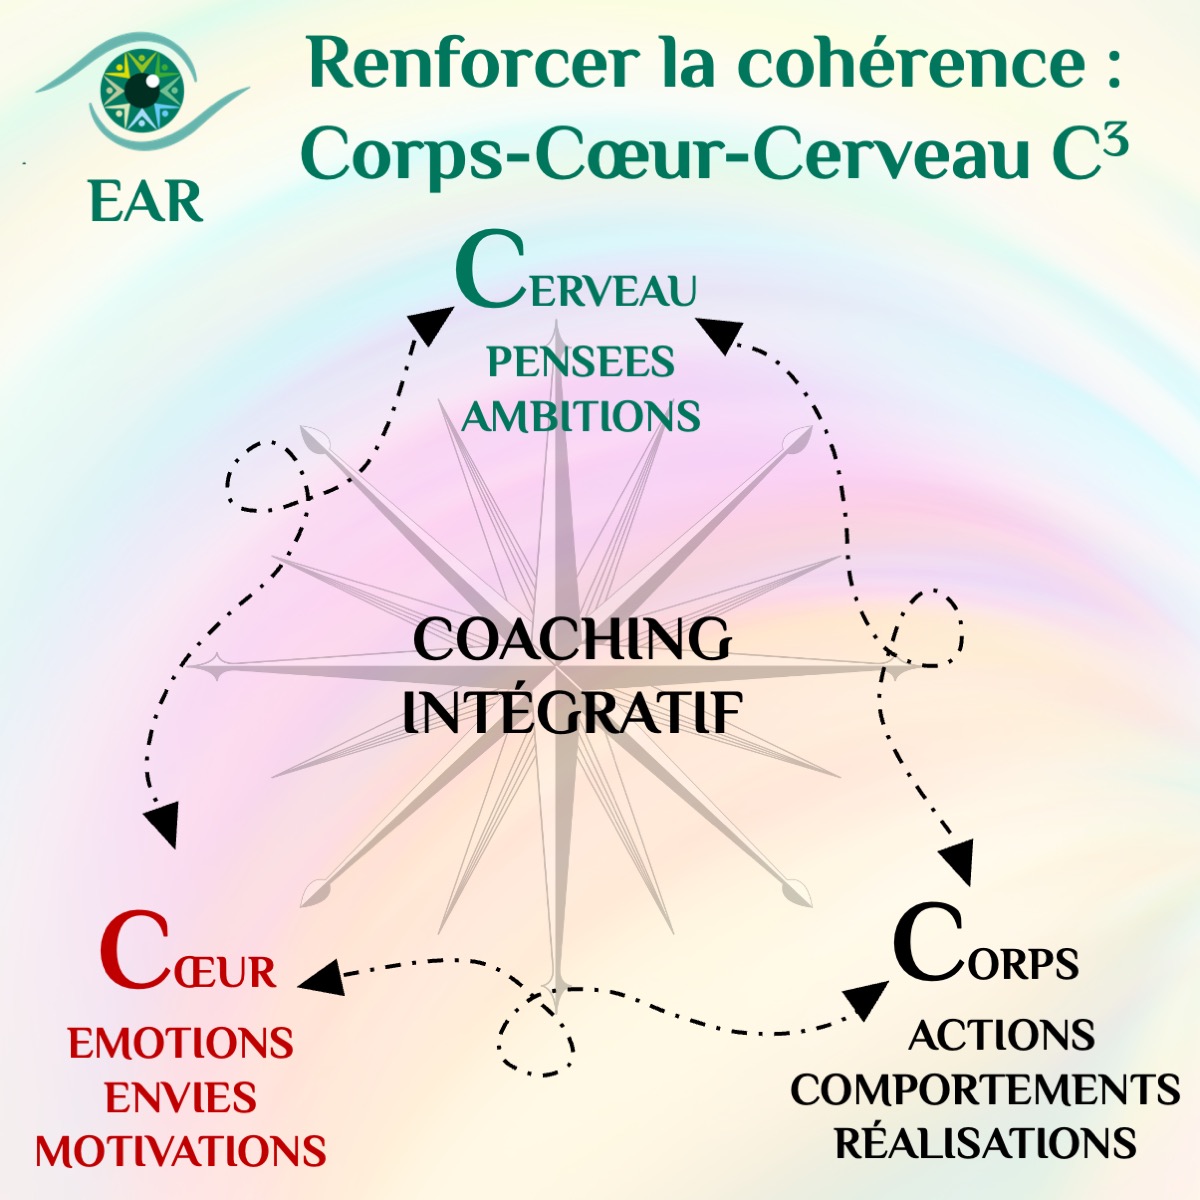 Renforcer la cohérence corps coeur cerveau : un atelier de supervision RH le coaching intégratif EAR pour renforcer la confiance en soi la légitimité